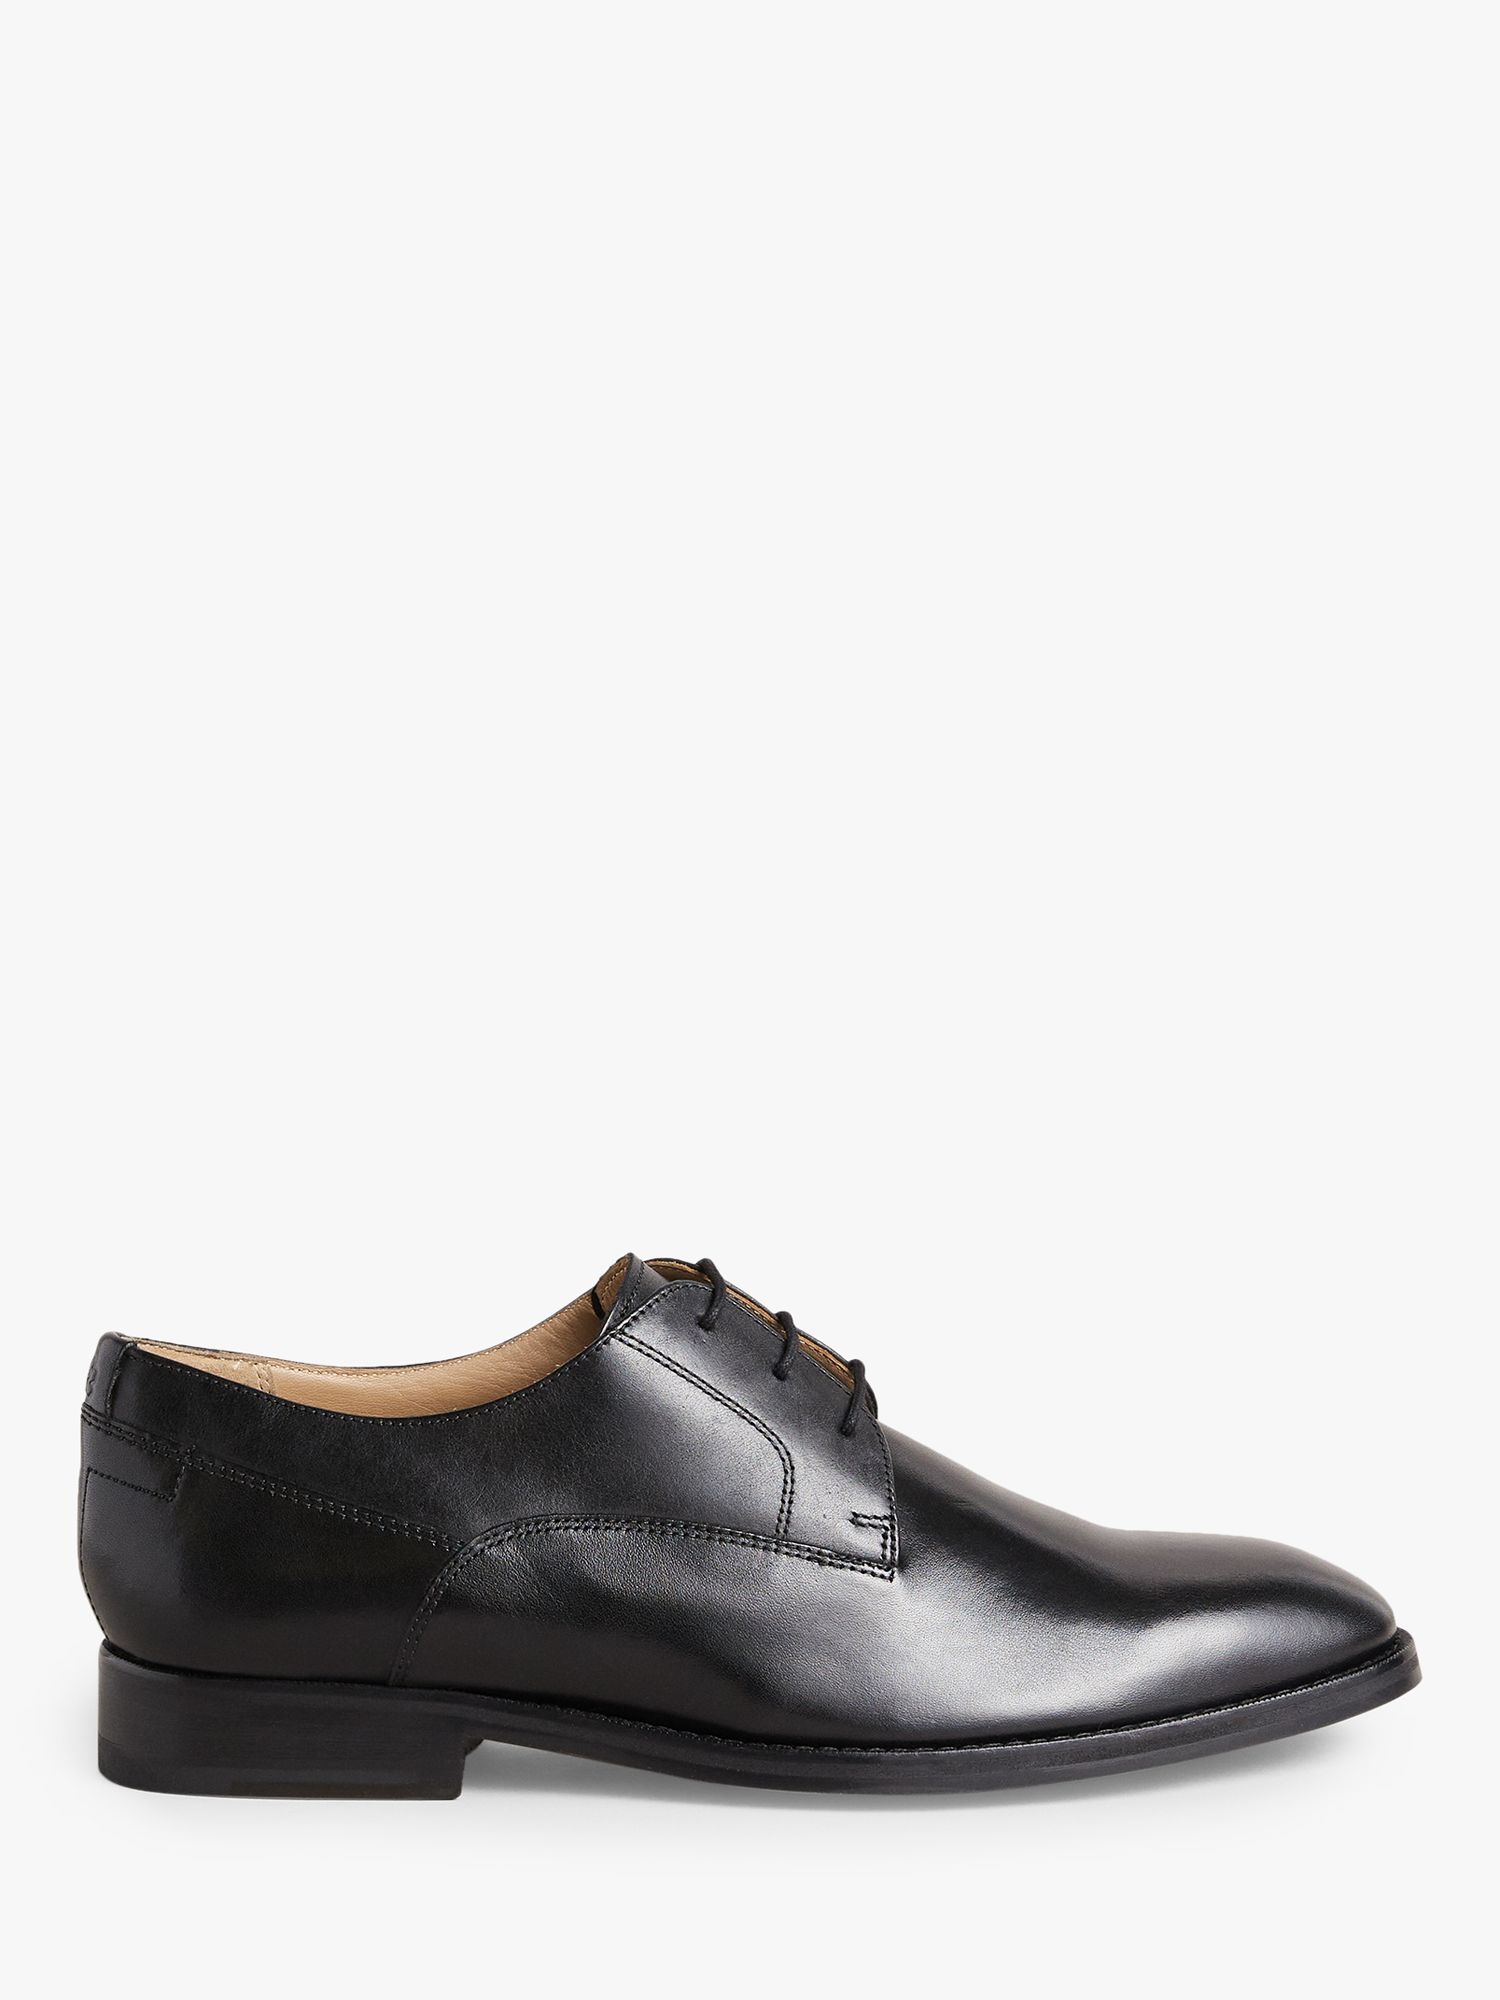 Ted Baker Kampten Leather Derby Shoes, Black at John Lewis & Partners